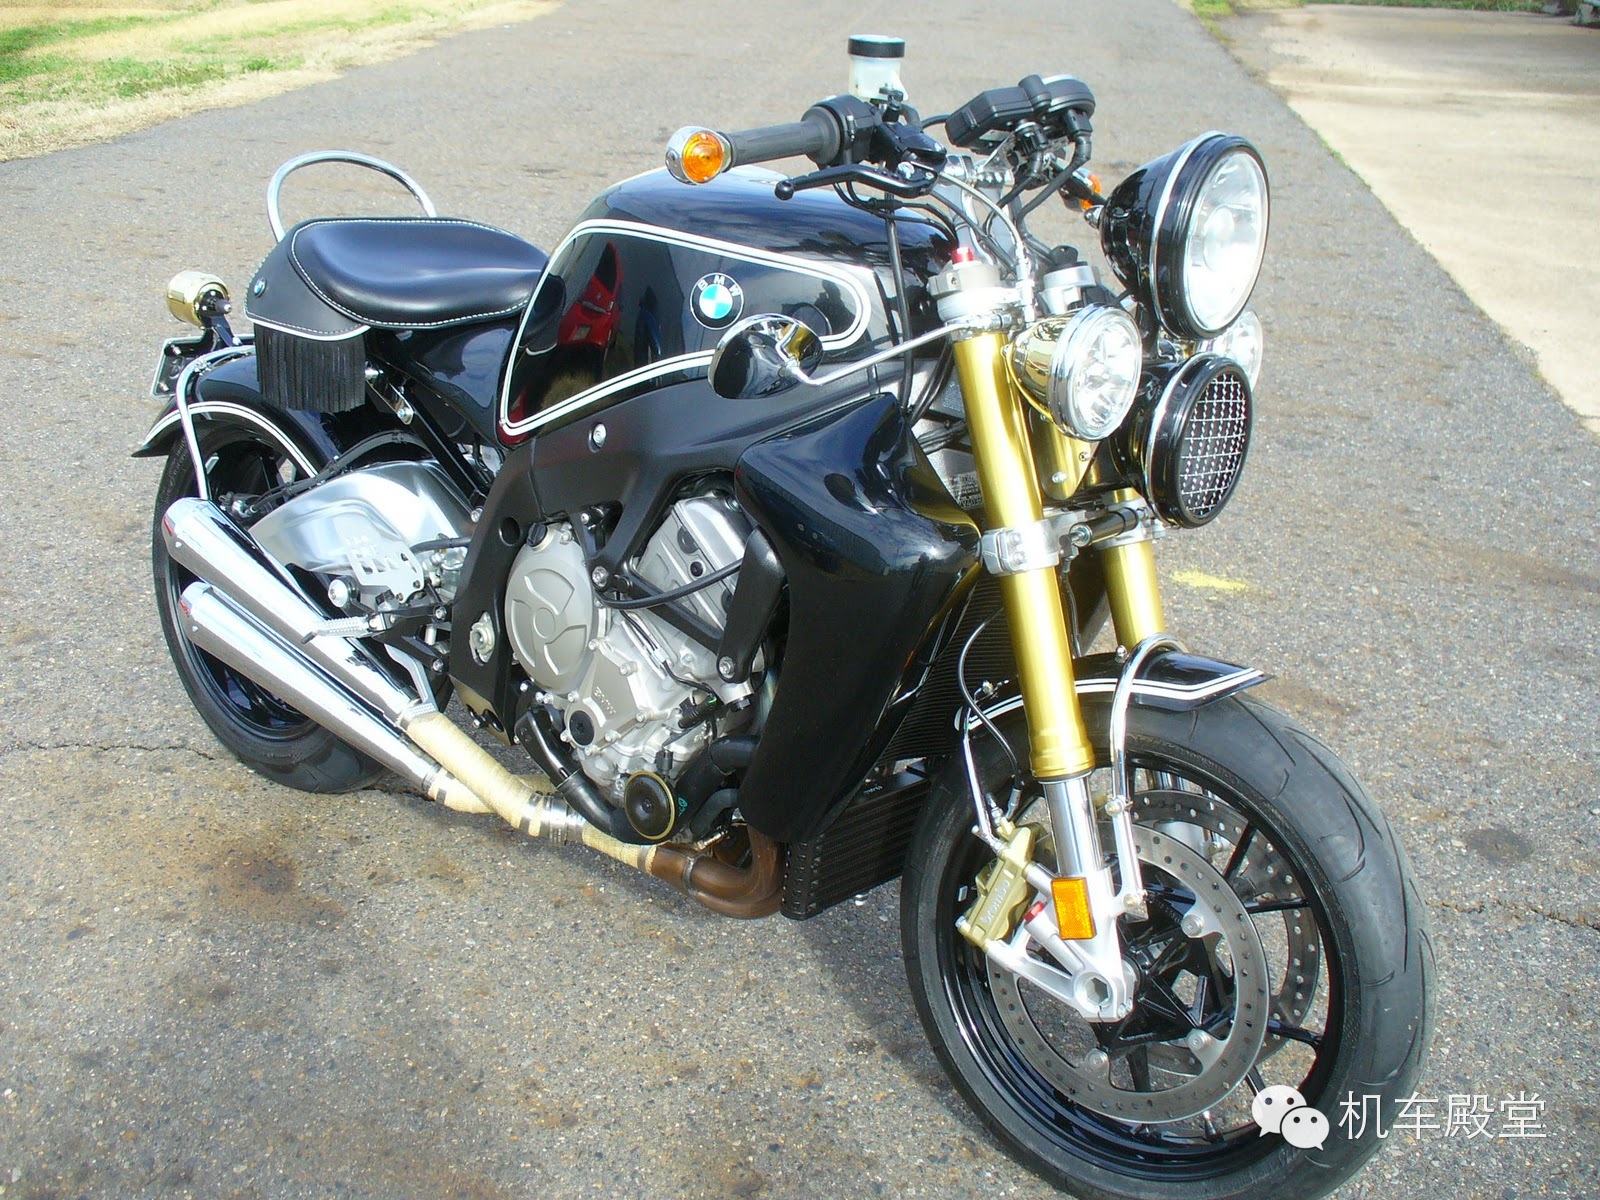 宝马S1000RR摩托车 古典与现代完美结合